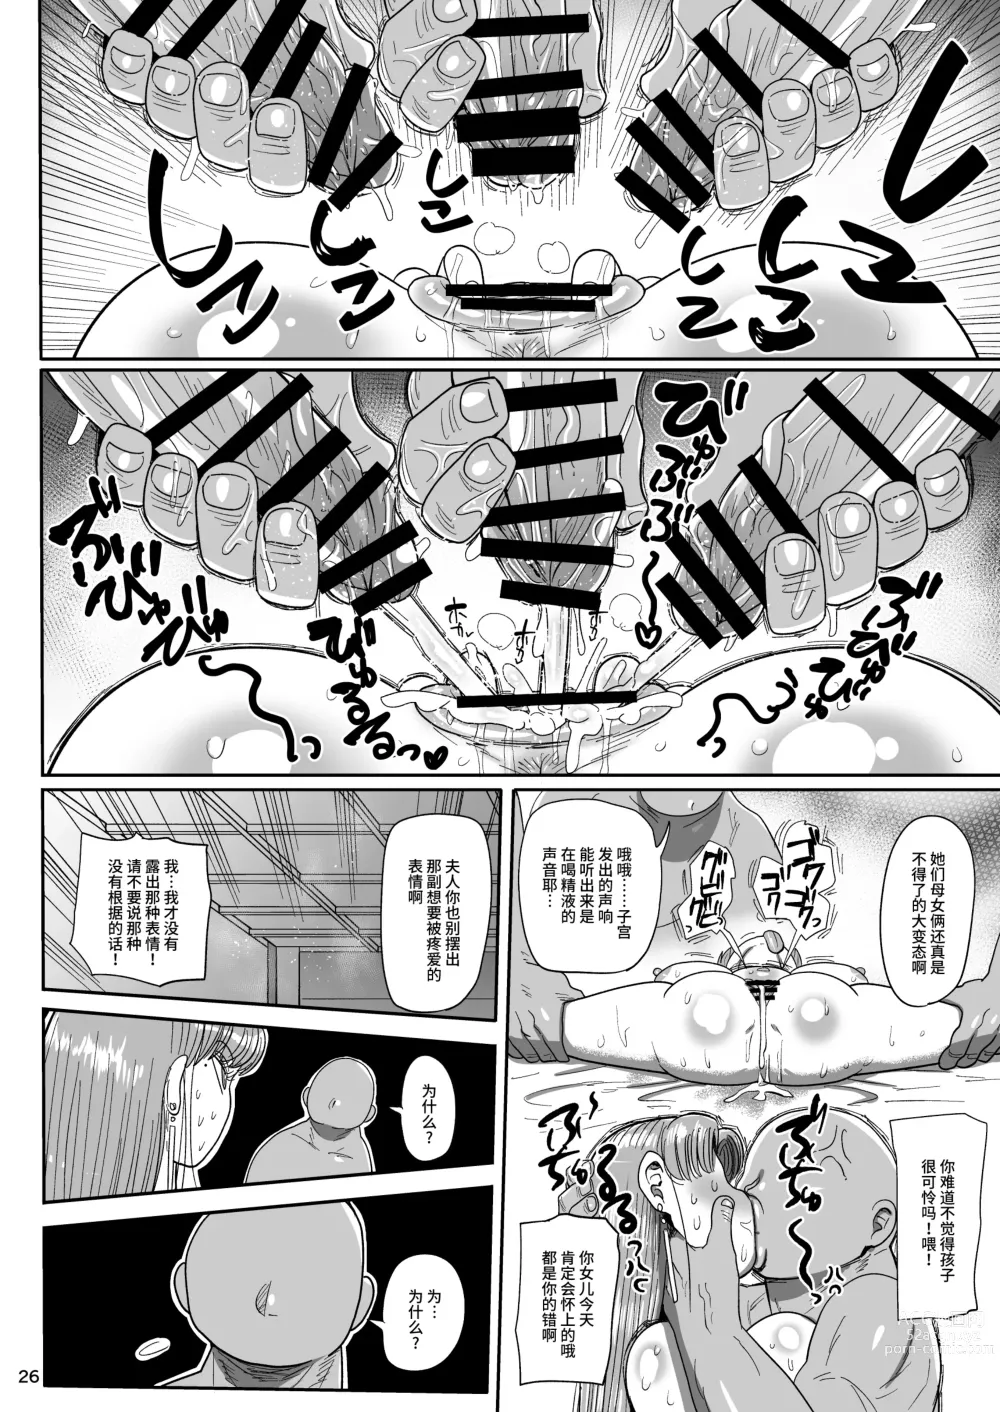 Page 25 of doujinshi Nandemo Chousa Mama Kuma Shizue ha TEIKO ga dekinai